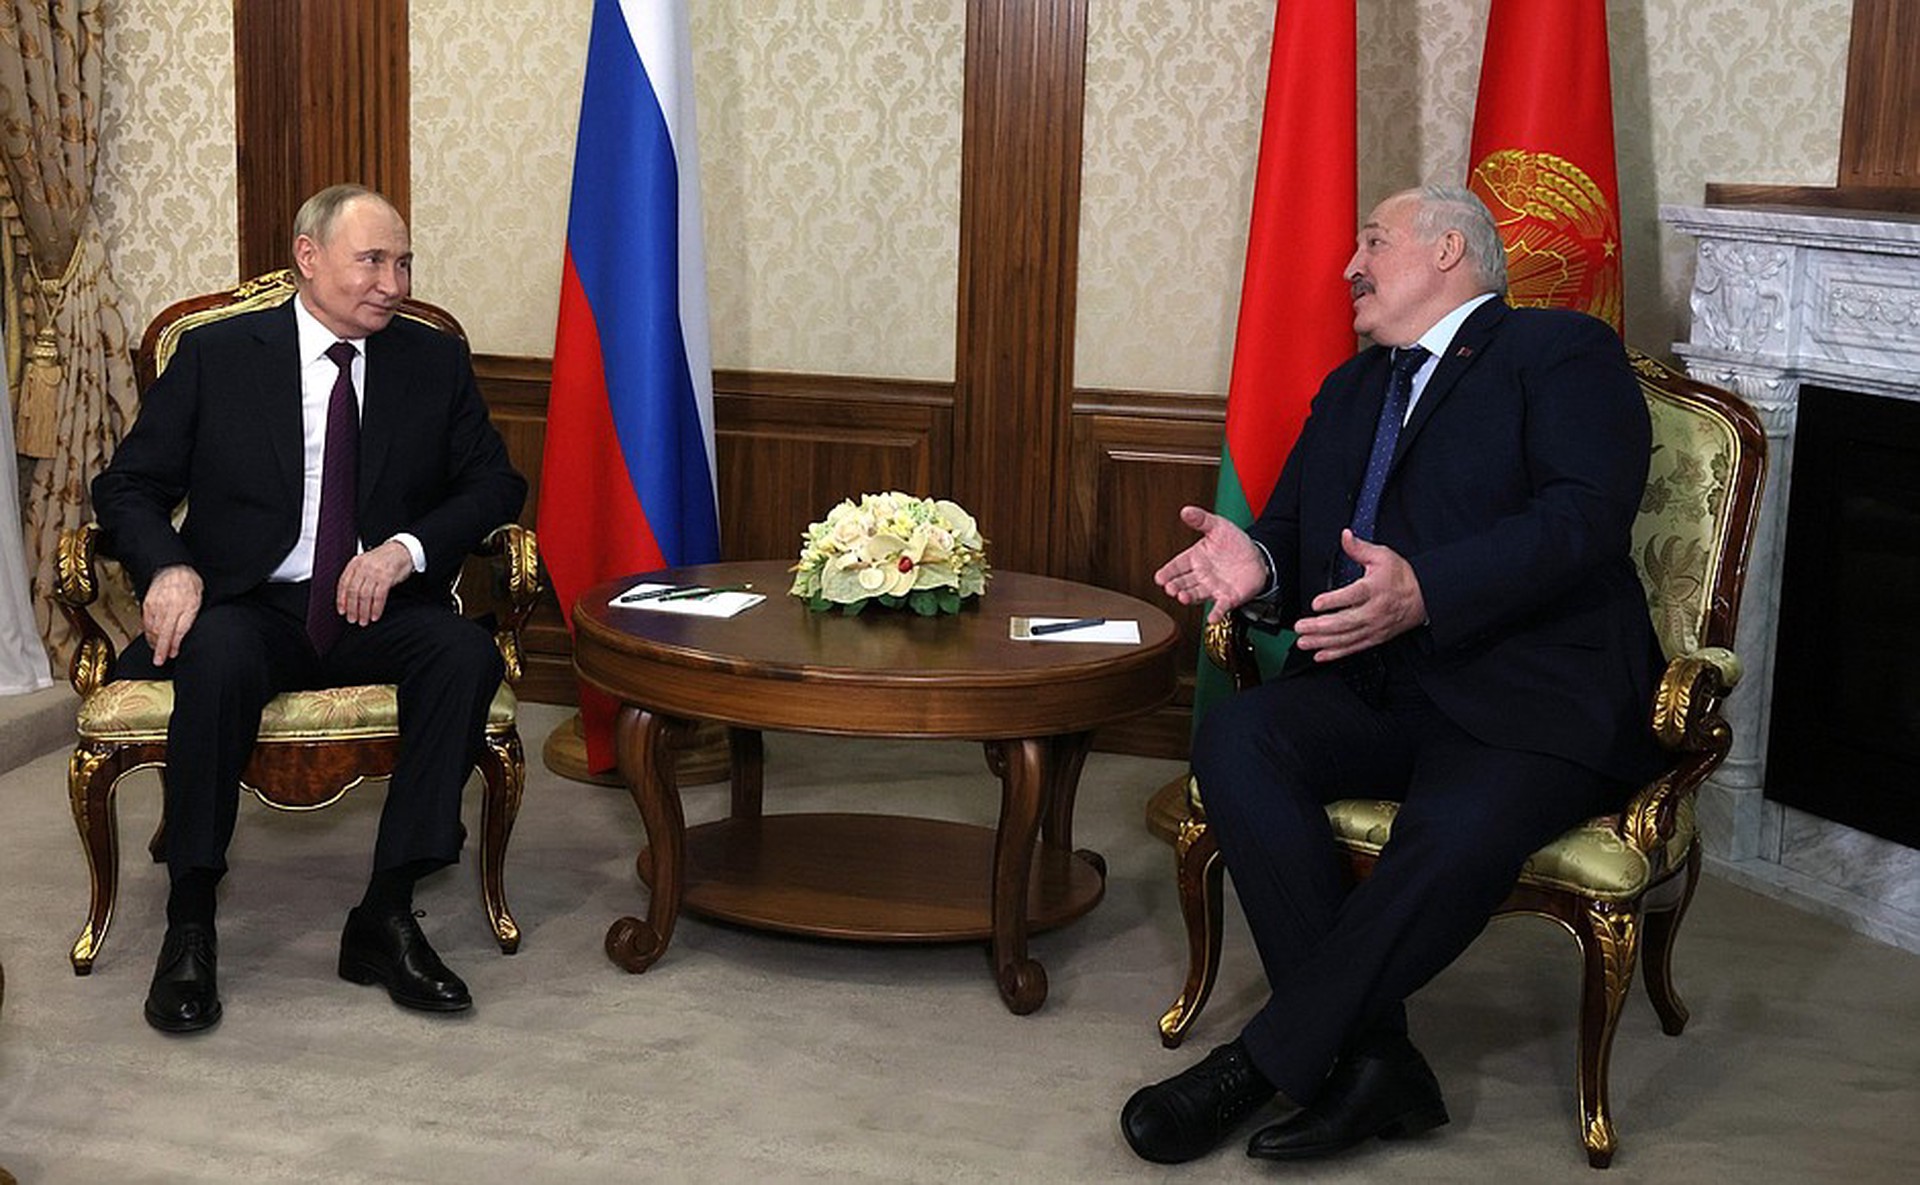 Путин и Лукашенко обсудили развитие Союзного государства